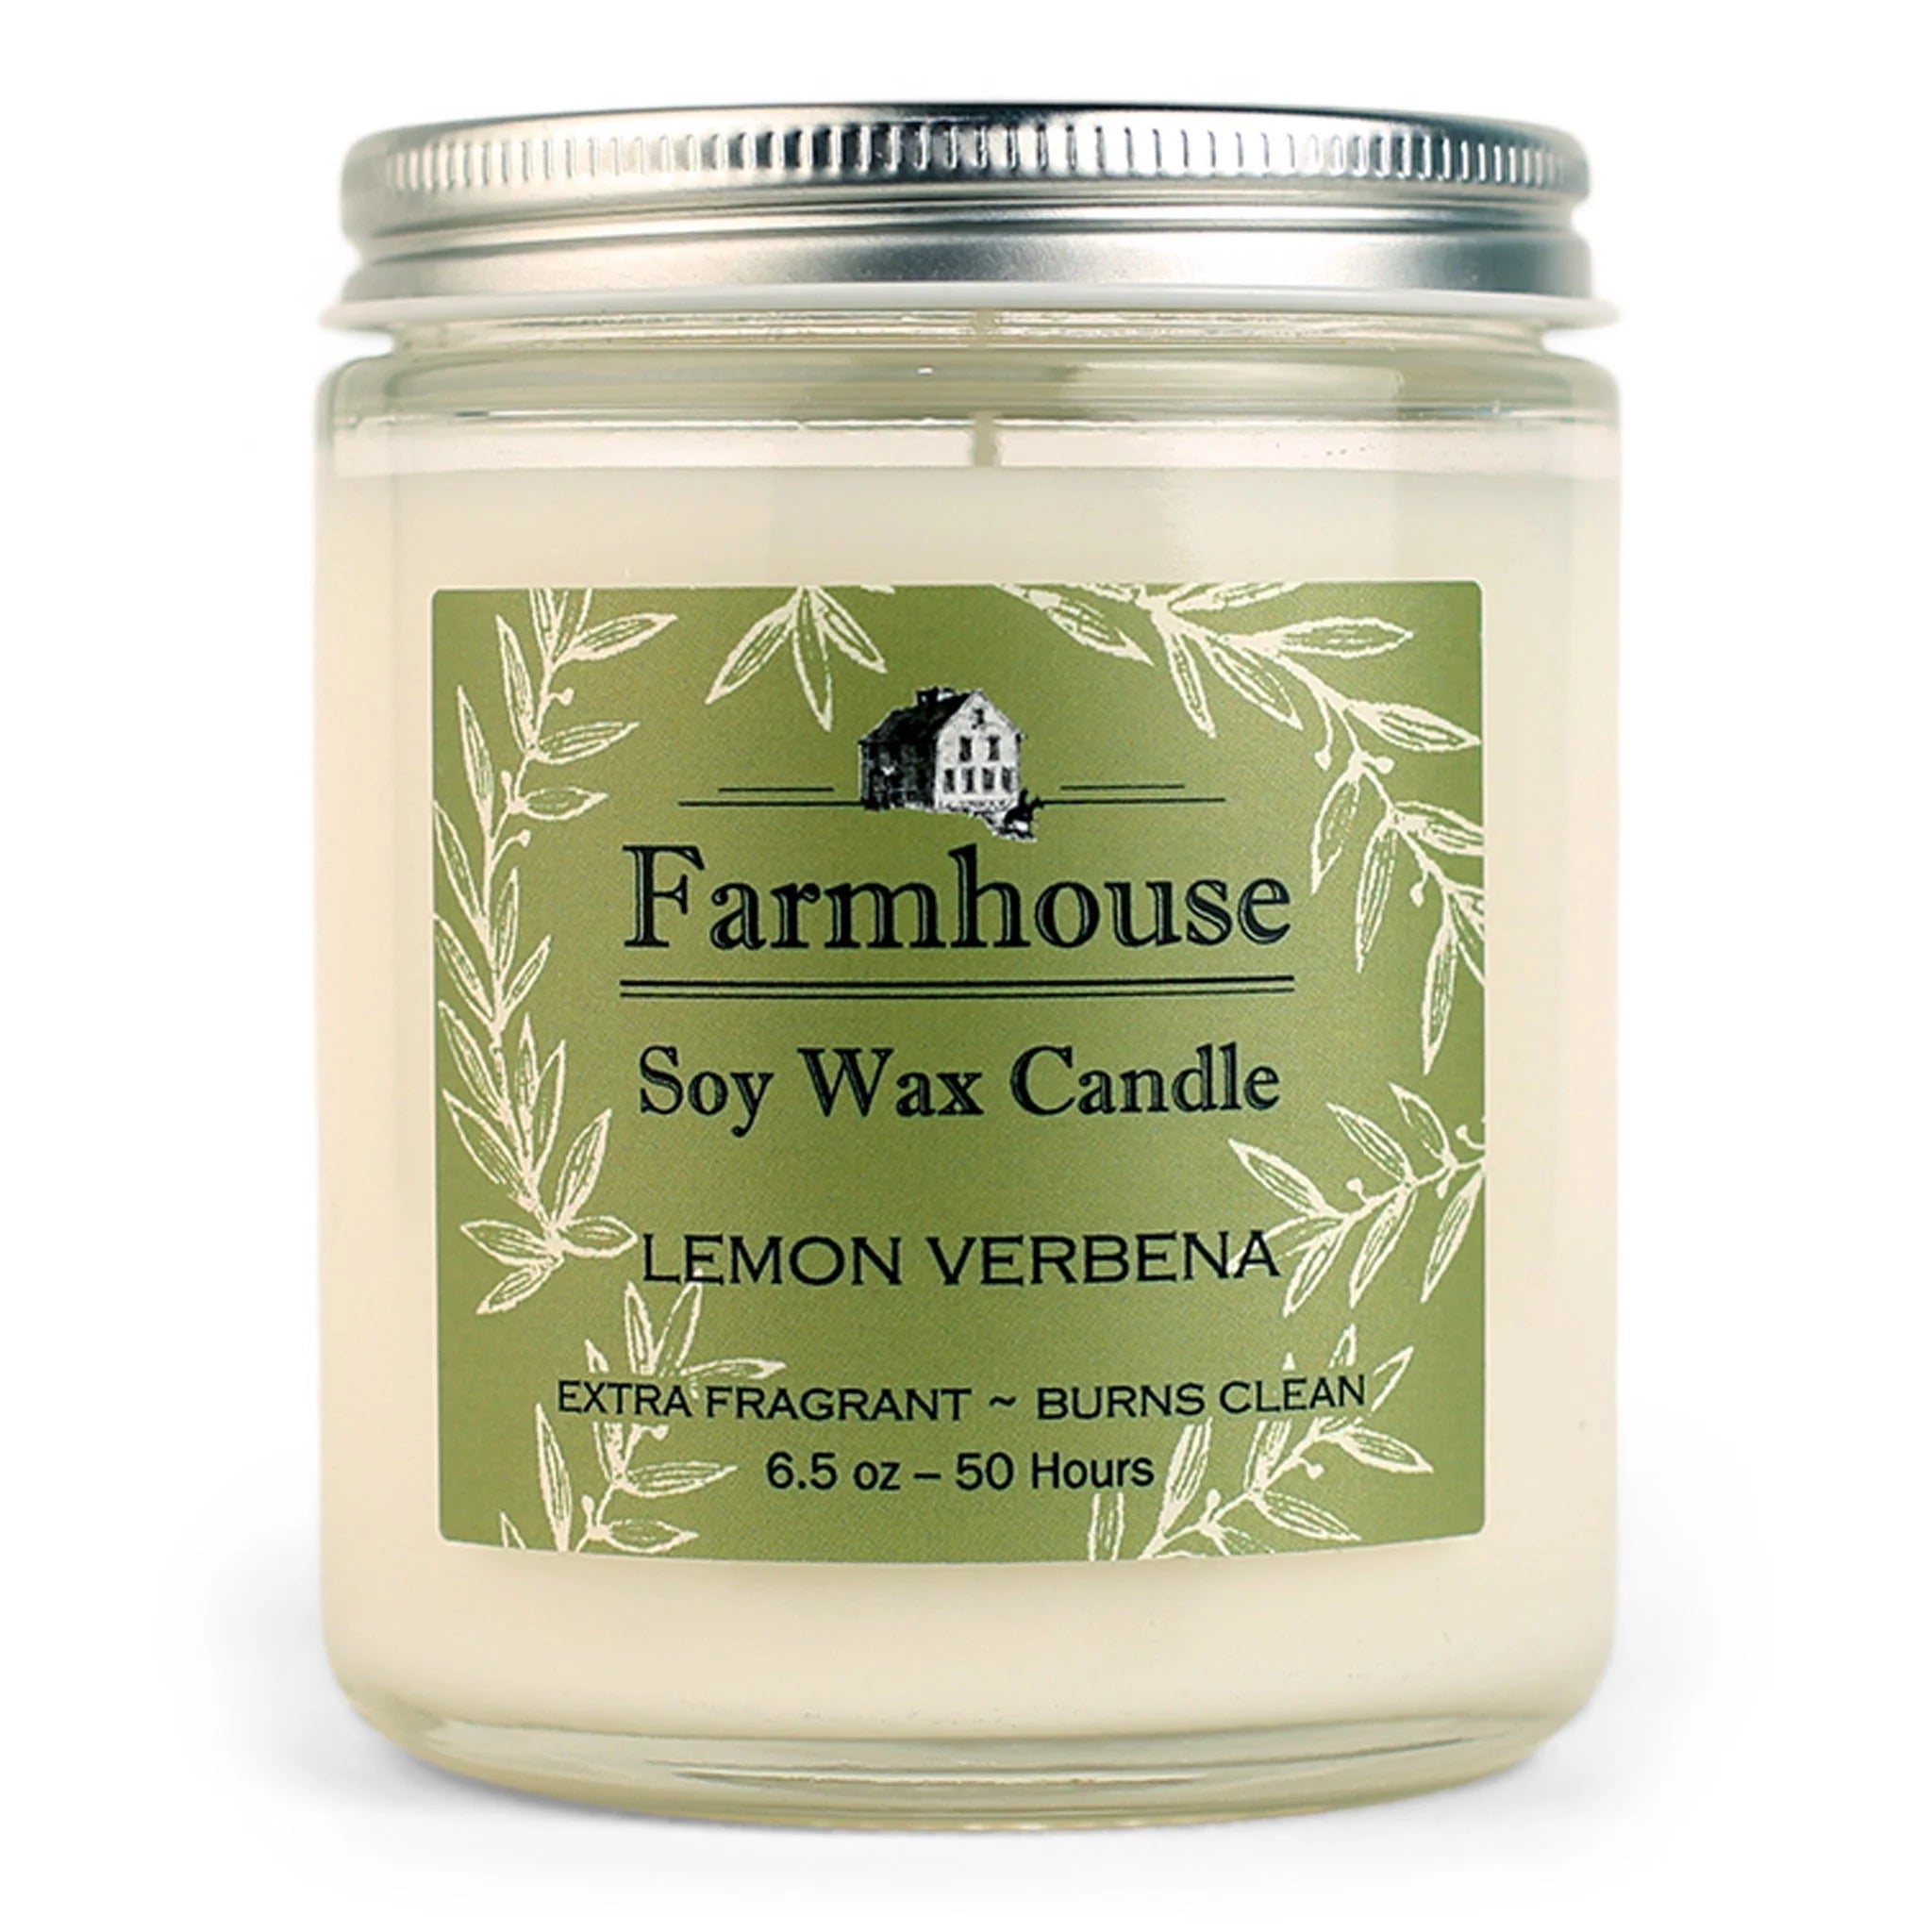 6.5oz Lemon Verbena Candle